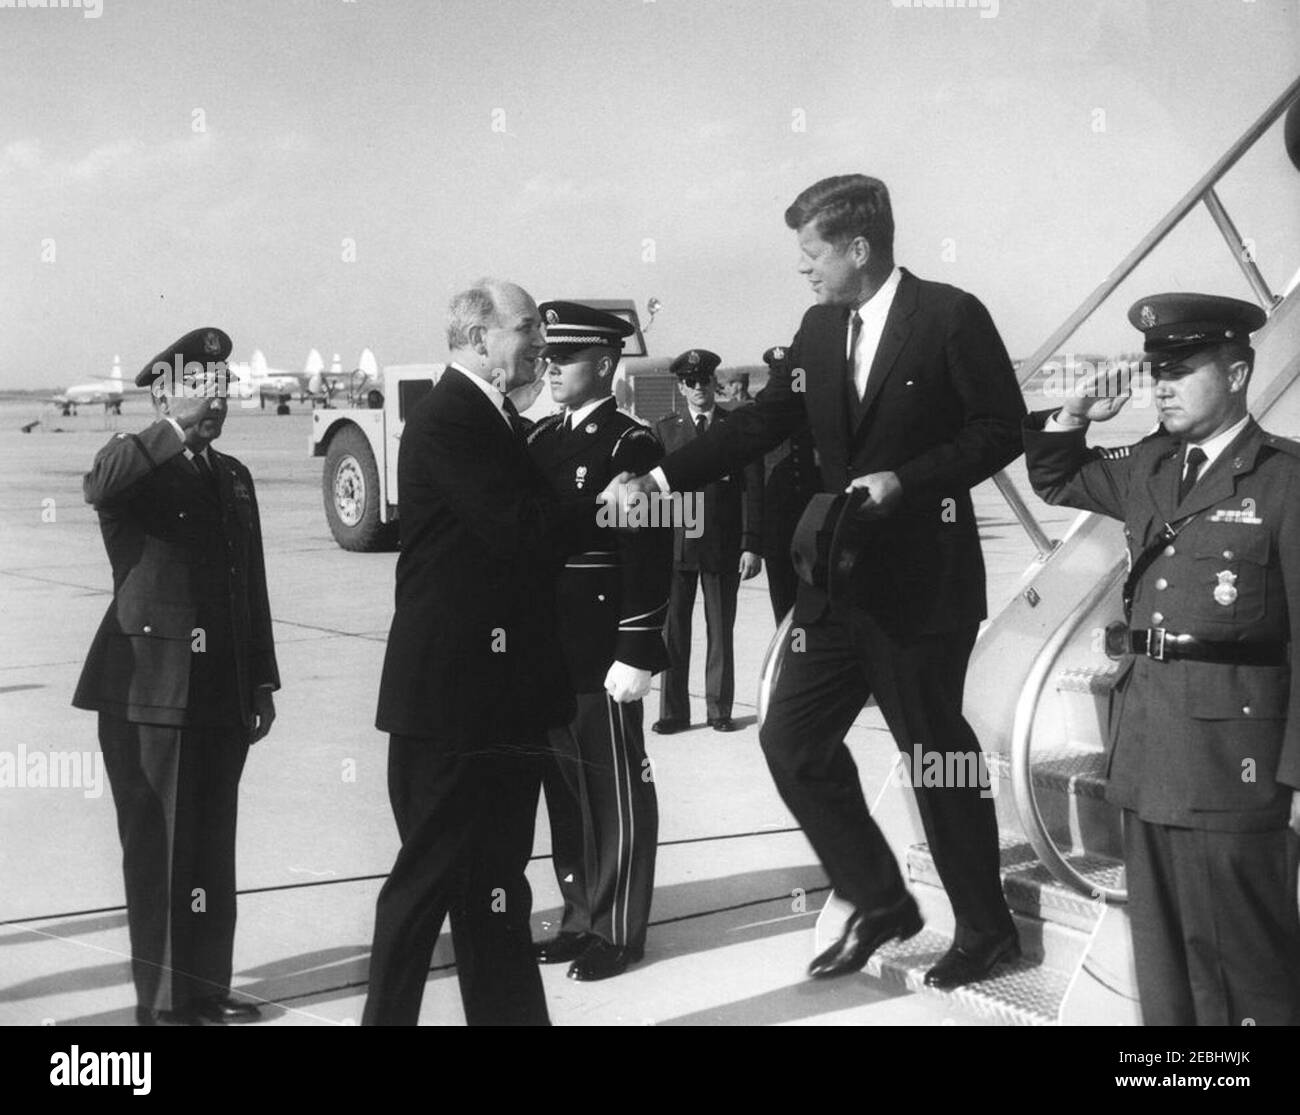 Il presidente Kennedy torna alla base dell'aeronautica di Andrews dalle vacanze di Pasqua, alle 16:33. Il presidente John F. Kennedy (cappello) stringe le mani con il Segretario di Stato, Dean Rusk, al suo arrivo a bordo dell'Air Force One alla base dell'aeronautica di Andrews, Maryland, dopo la vacanza di Pasqua a Palm Beach, Florida. Foto Stock